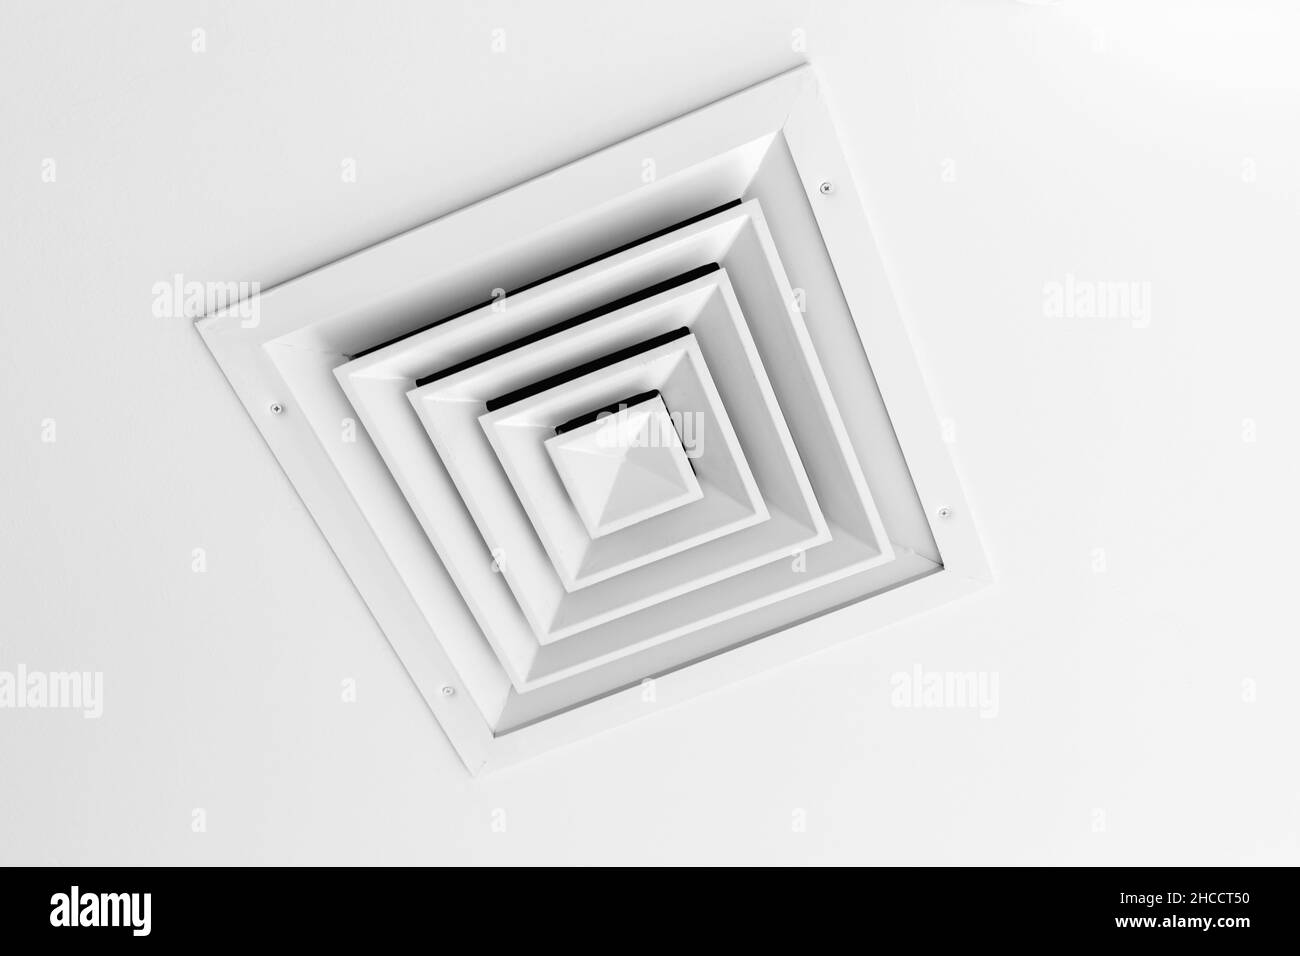 Ceiling ventilation immagini e fotografie stock ad alta risoluzione - Alamy